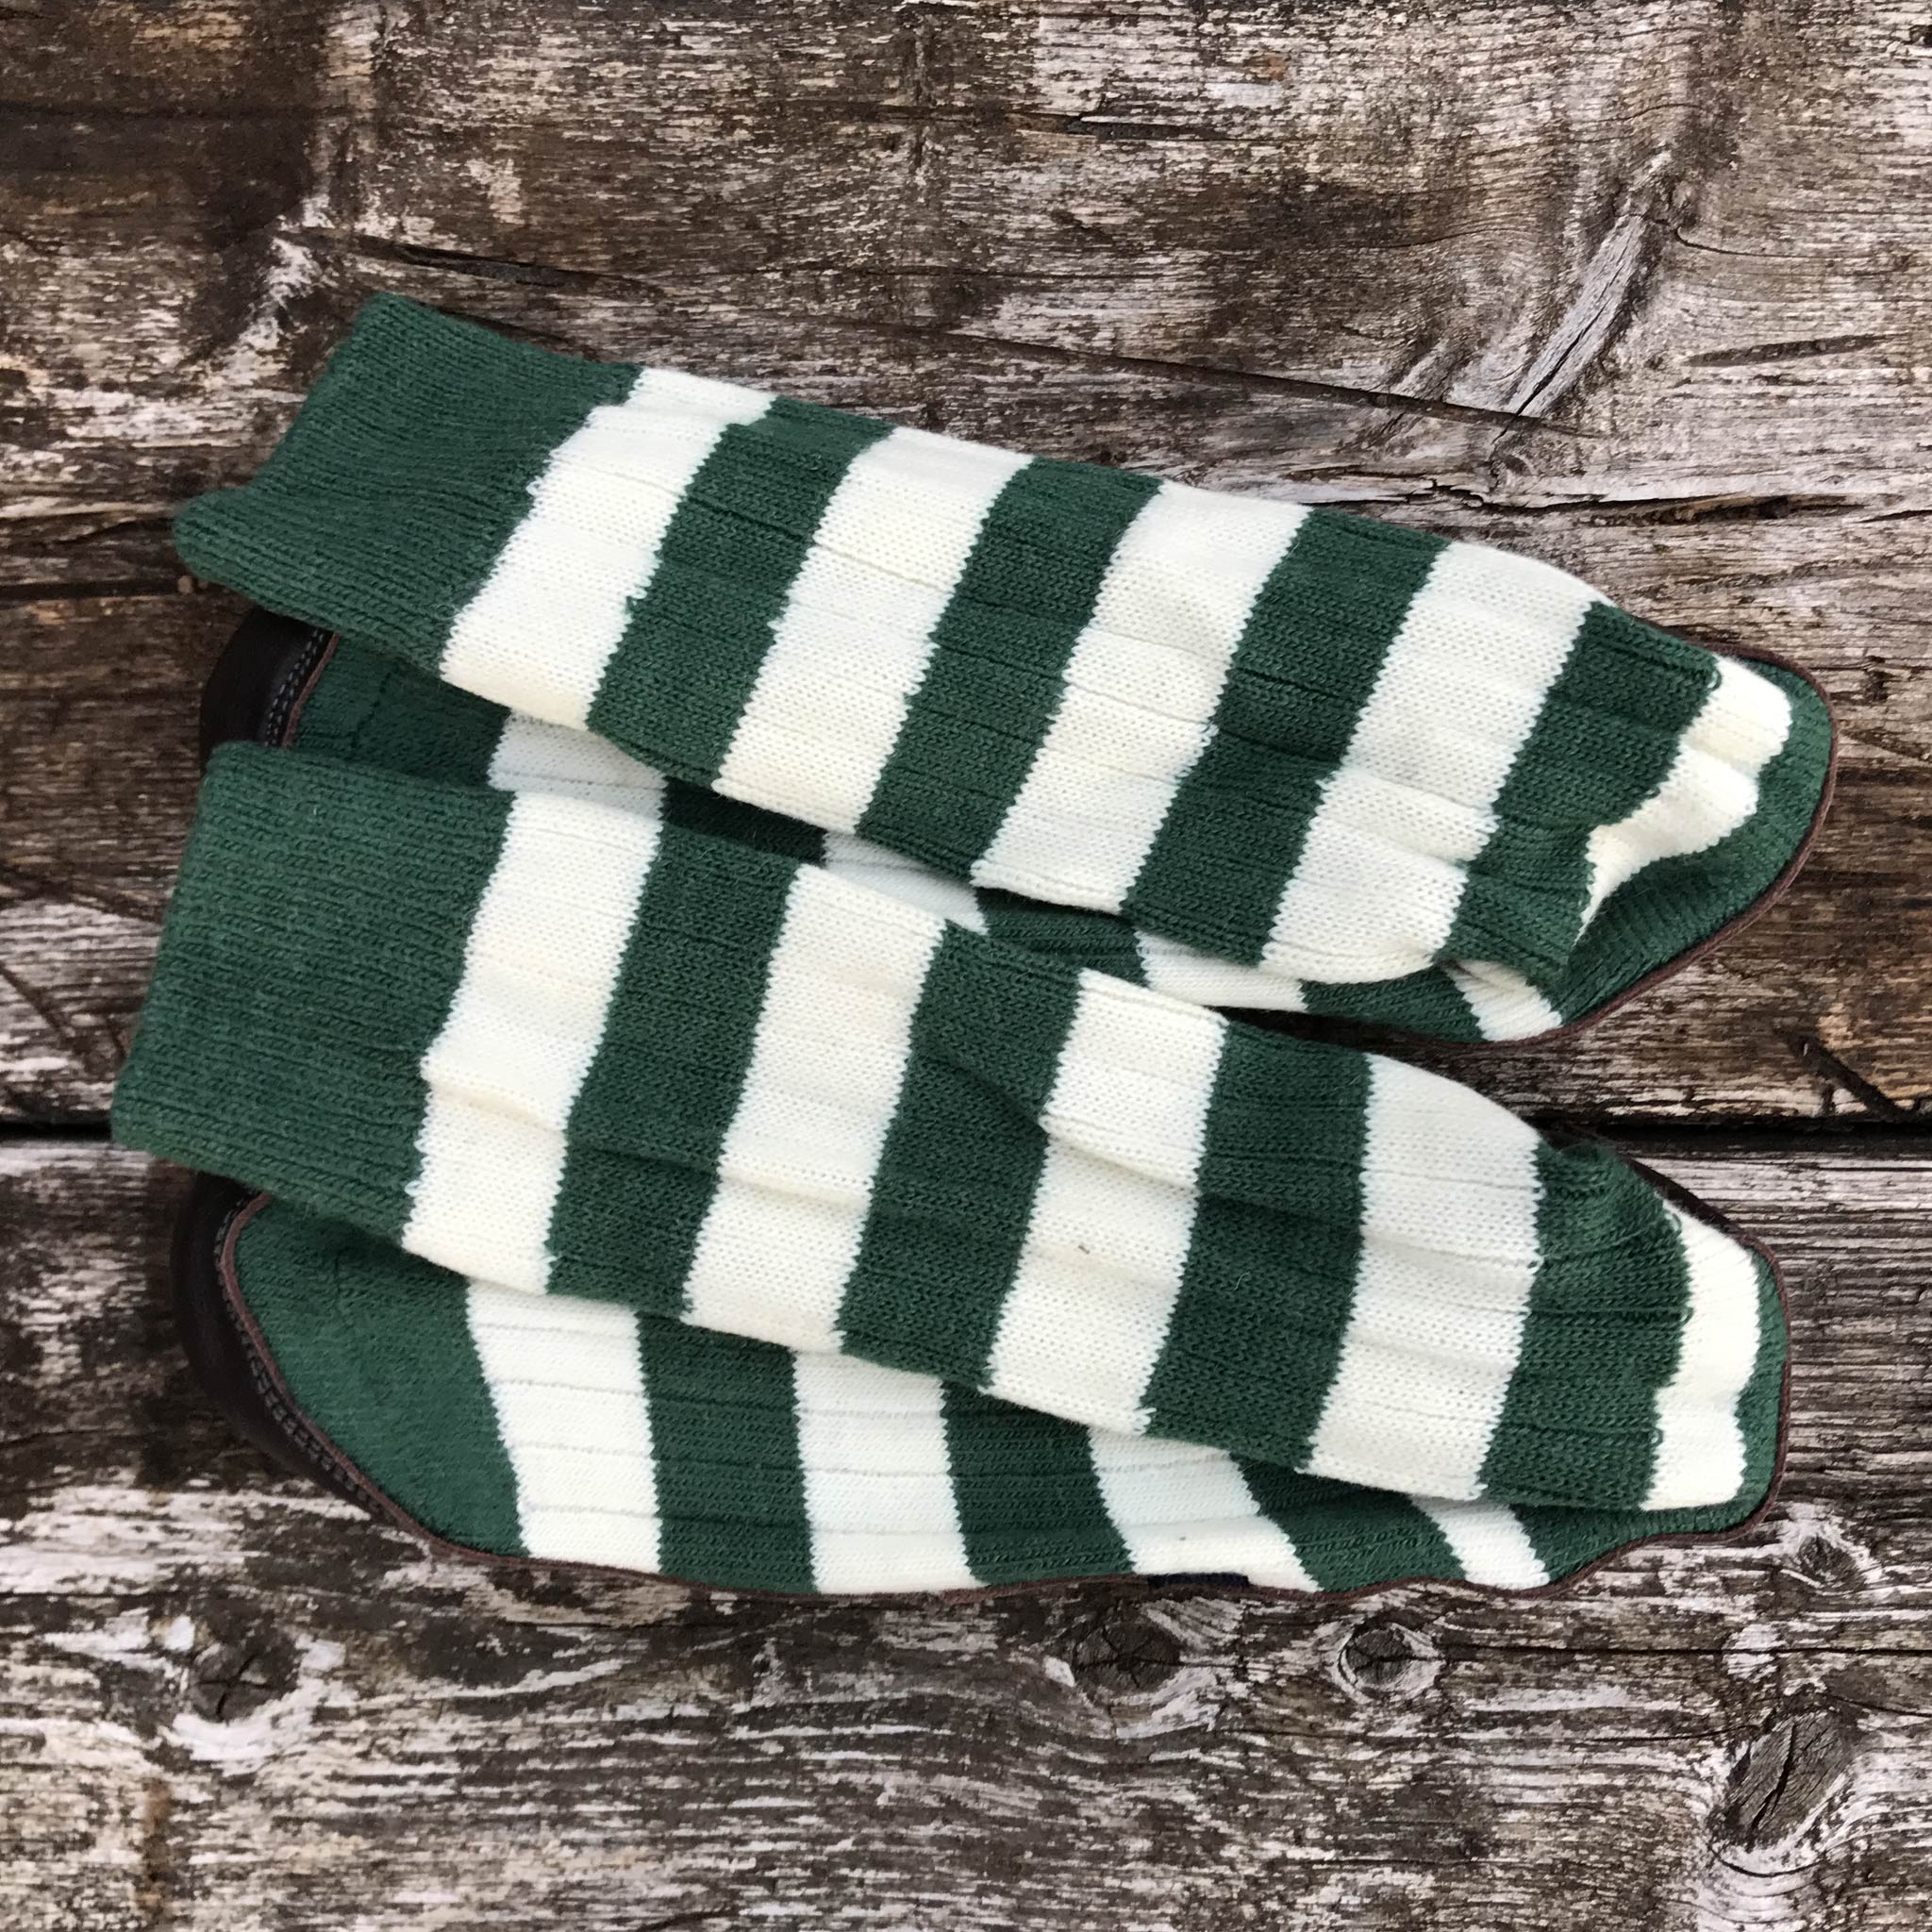 Slipper Sock green and white stripe - overhead